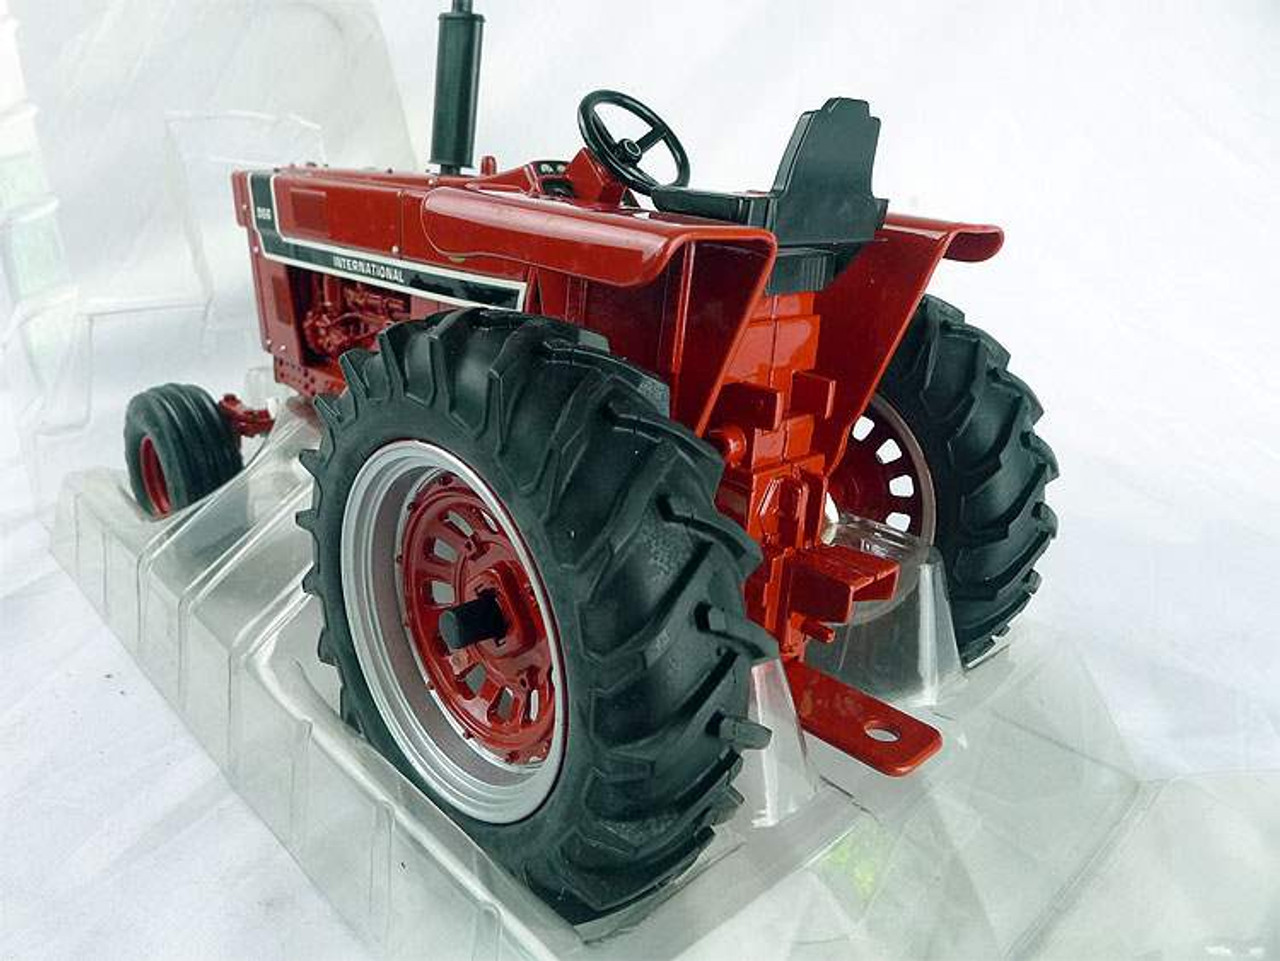 1/16 ERTL International Harvester 966 Tractor Diecast Model